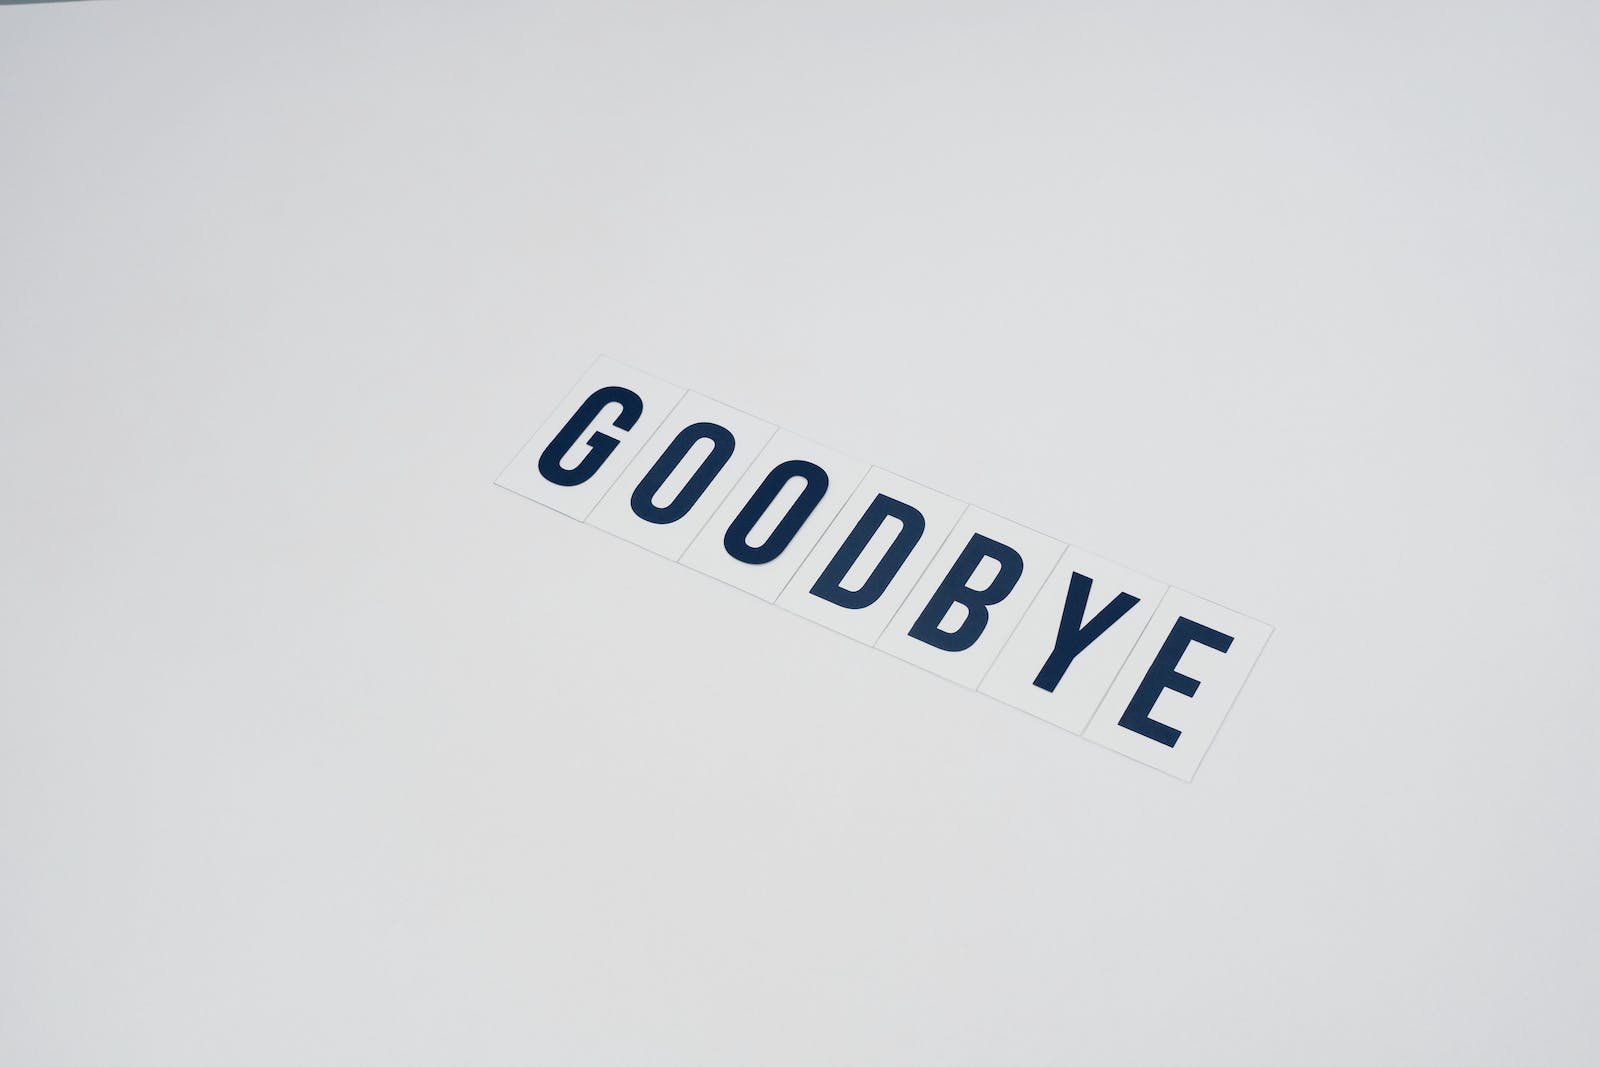 een wit bord waarop het woord goodbye staat